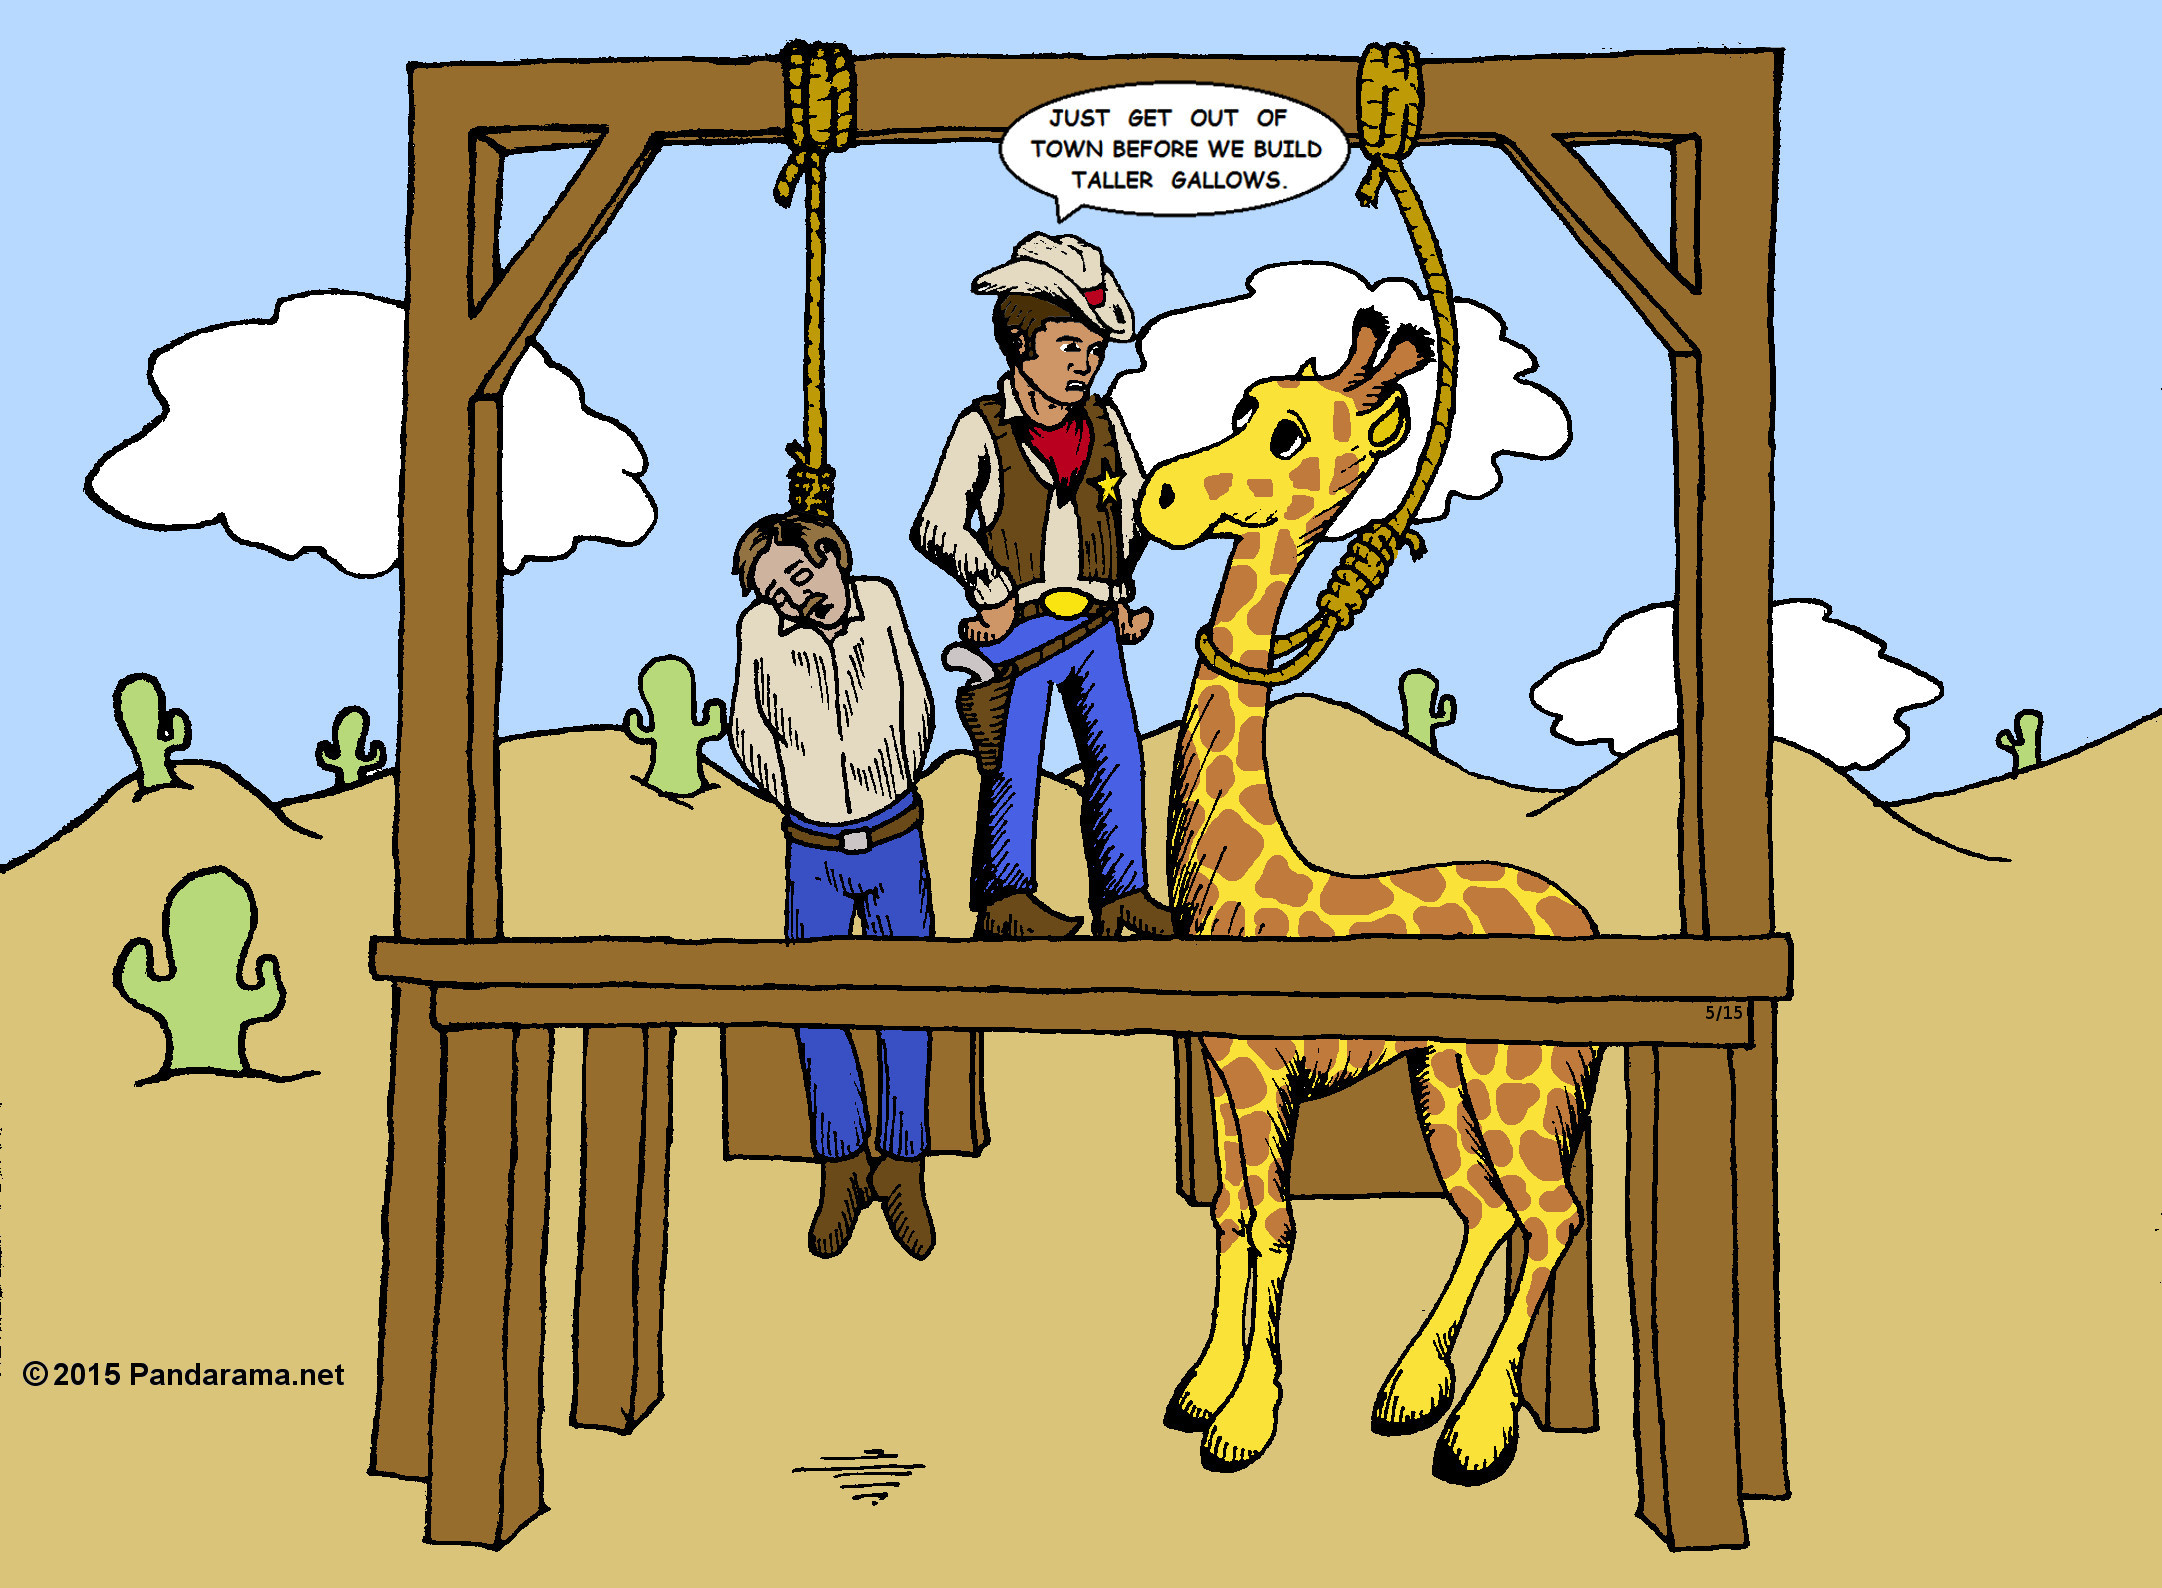 Pandarama.net Pandarama cartoon of An Old West sheriff attempts to hand a giraffe, but the giraffe is too tall.